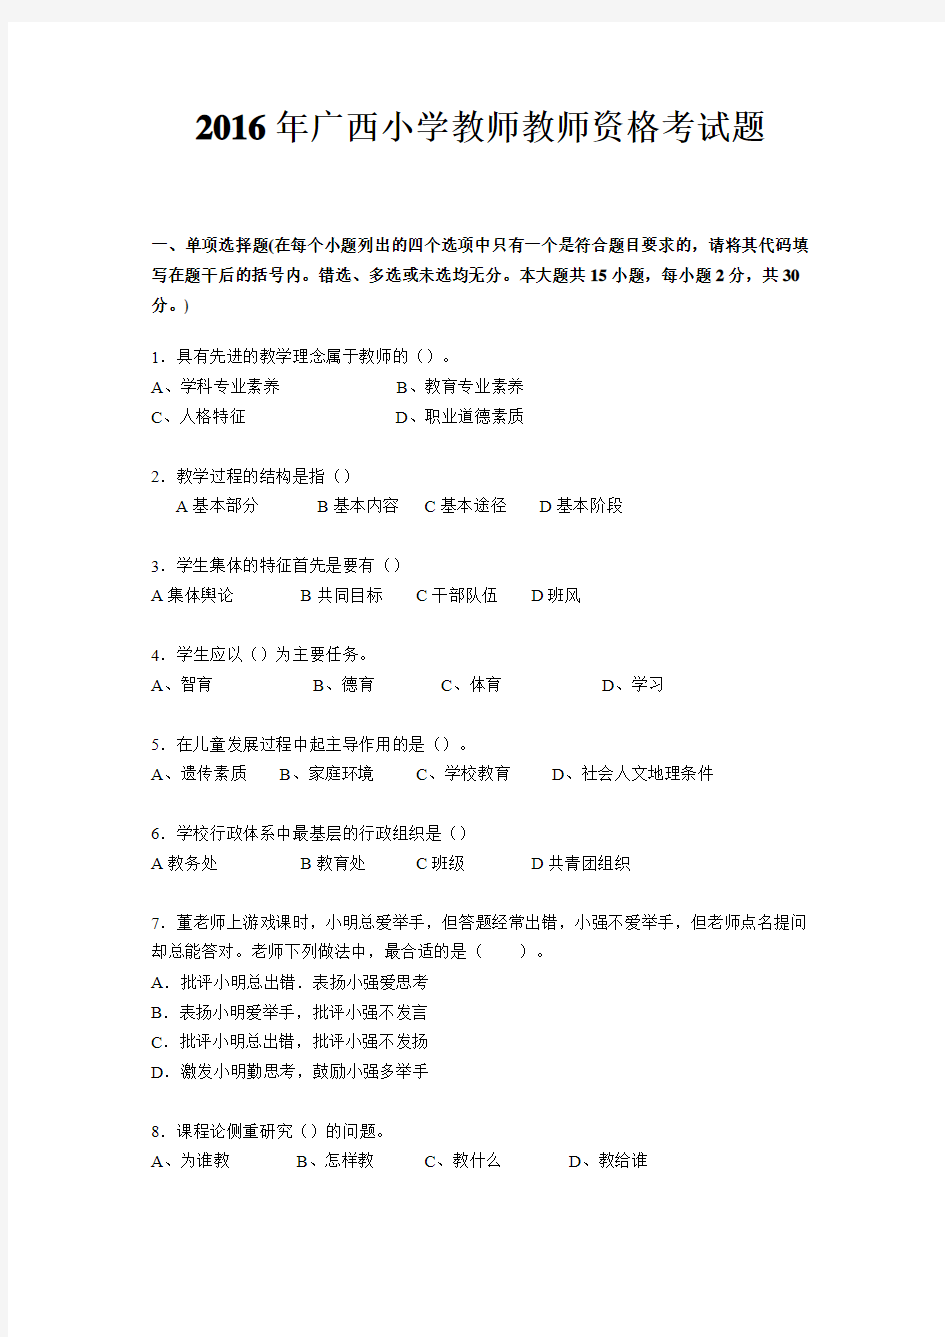 2016年广西小学教师教师资格考试题